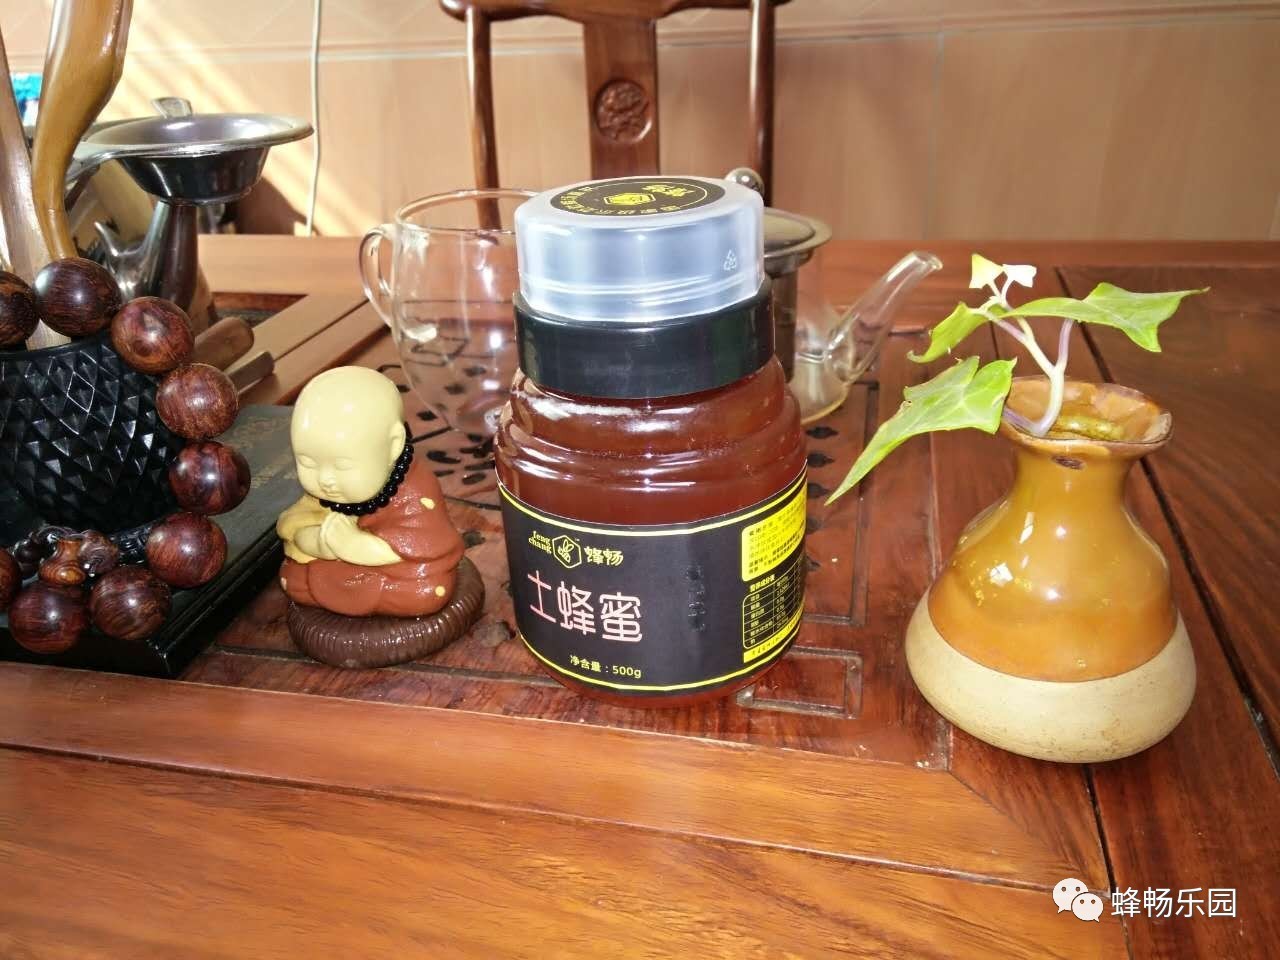 蜂蜜 醋 柠檬蜂蜜水的功效 红茶加蜂蜜 蜂蜜作用 香蕉与蜂蜜面膜